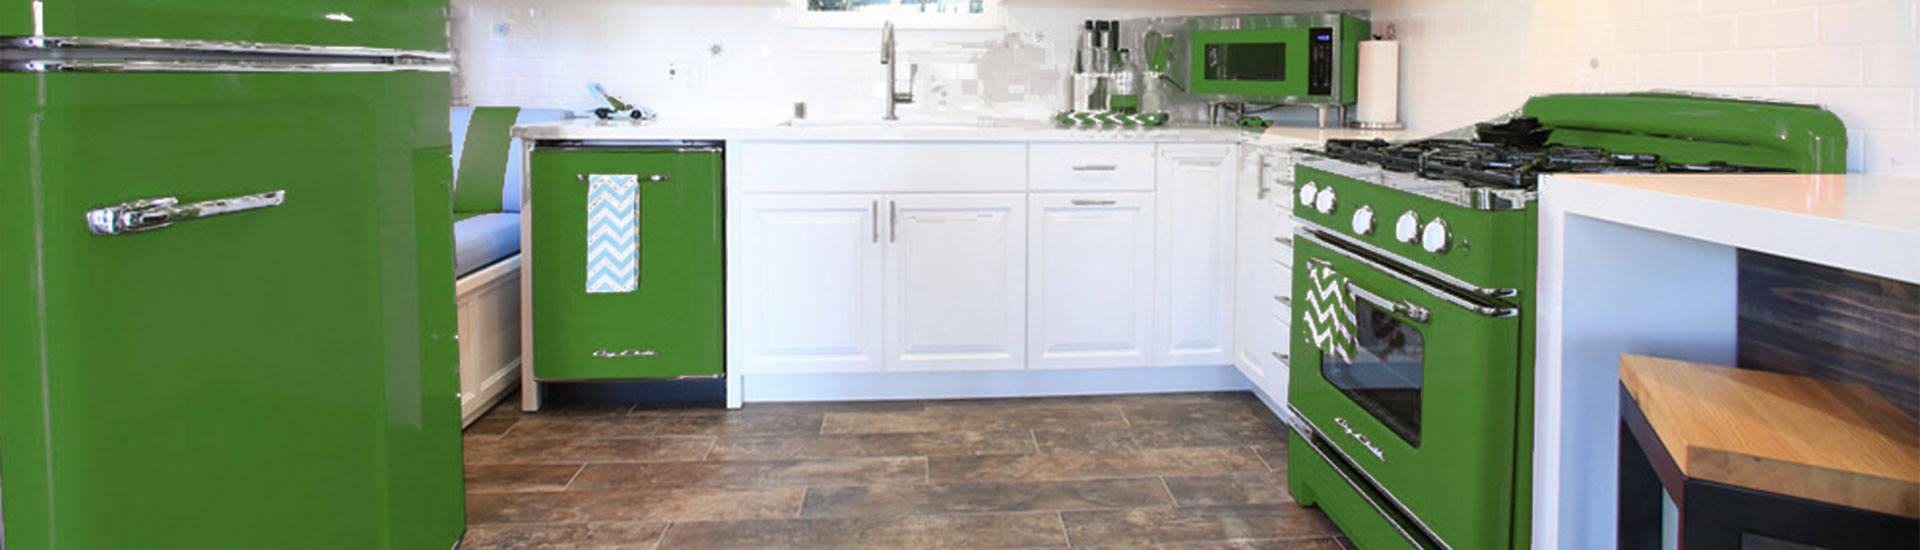 Green Refrigerator Wraps